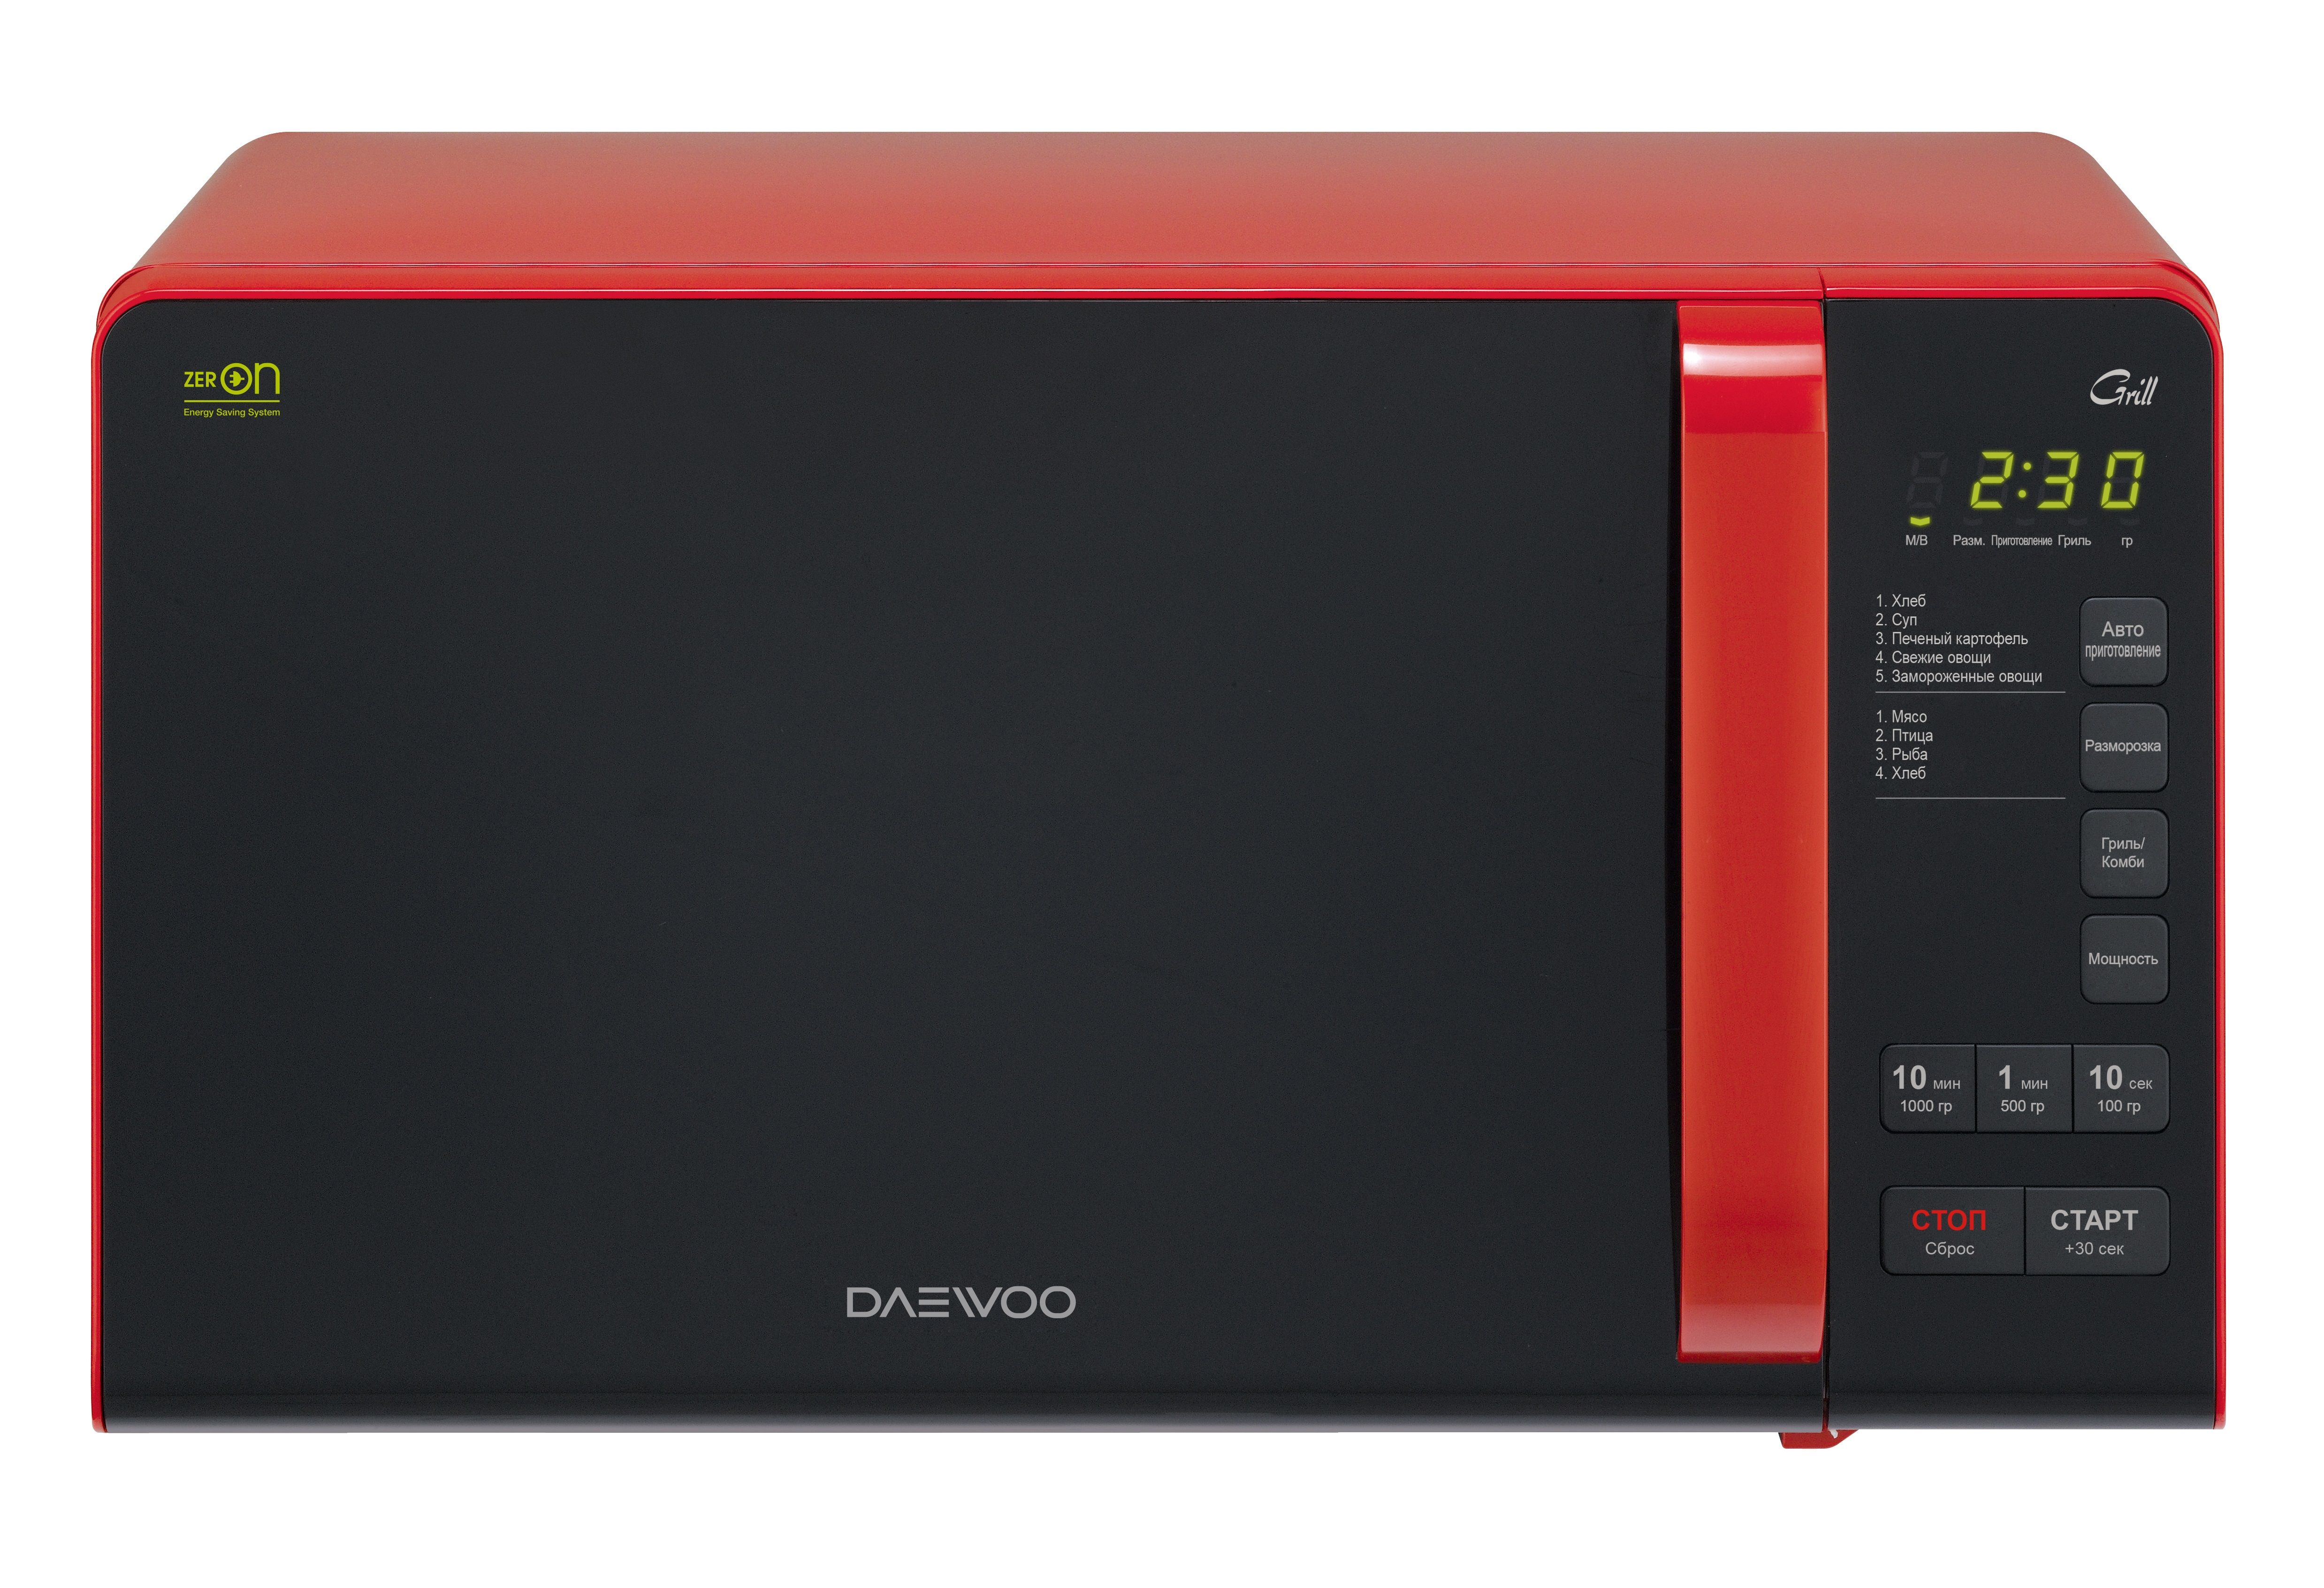 Купить микроволновую печь в эльдорадо. Микроволновая печь Daewoo KQG 663d. Микроволновая печь Daewoo KQG-663r красный/черный. Микроволновая печь Daewoo Electronics KQG-663r. Daewoo Electronics Kor-663k.